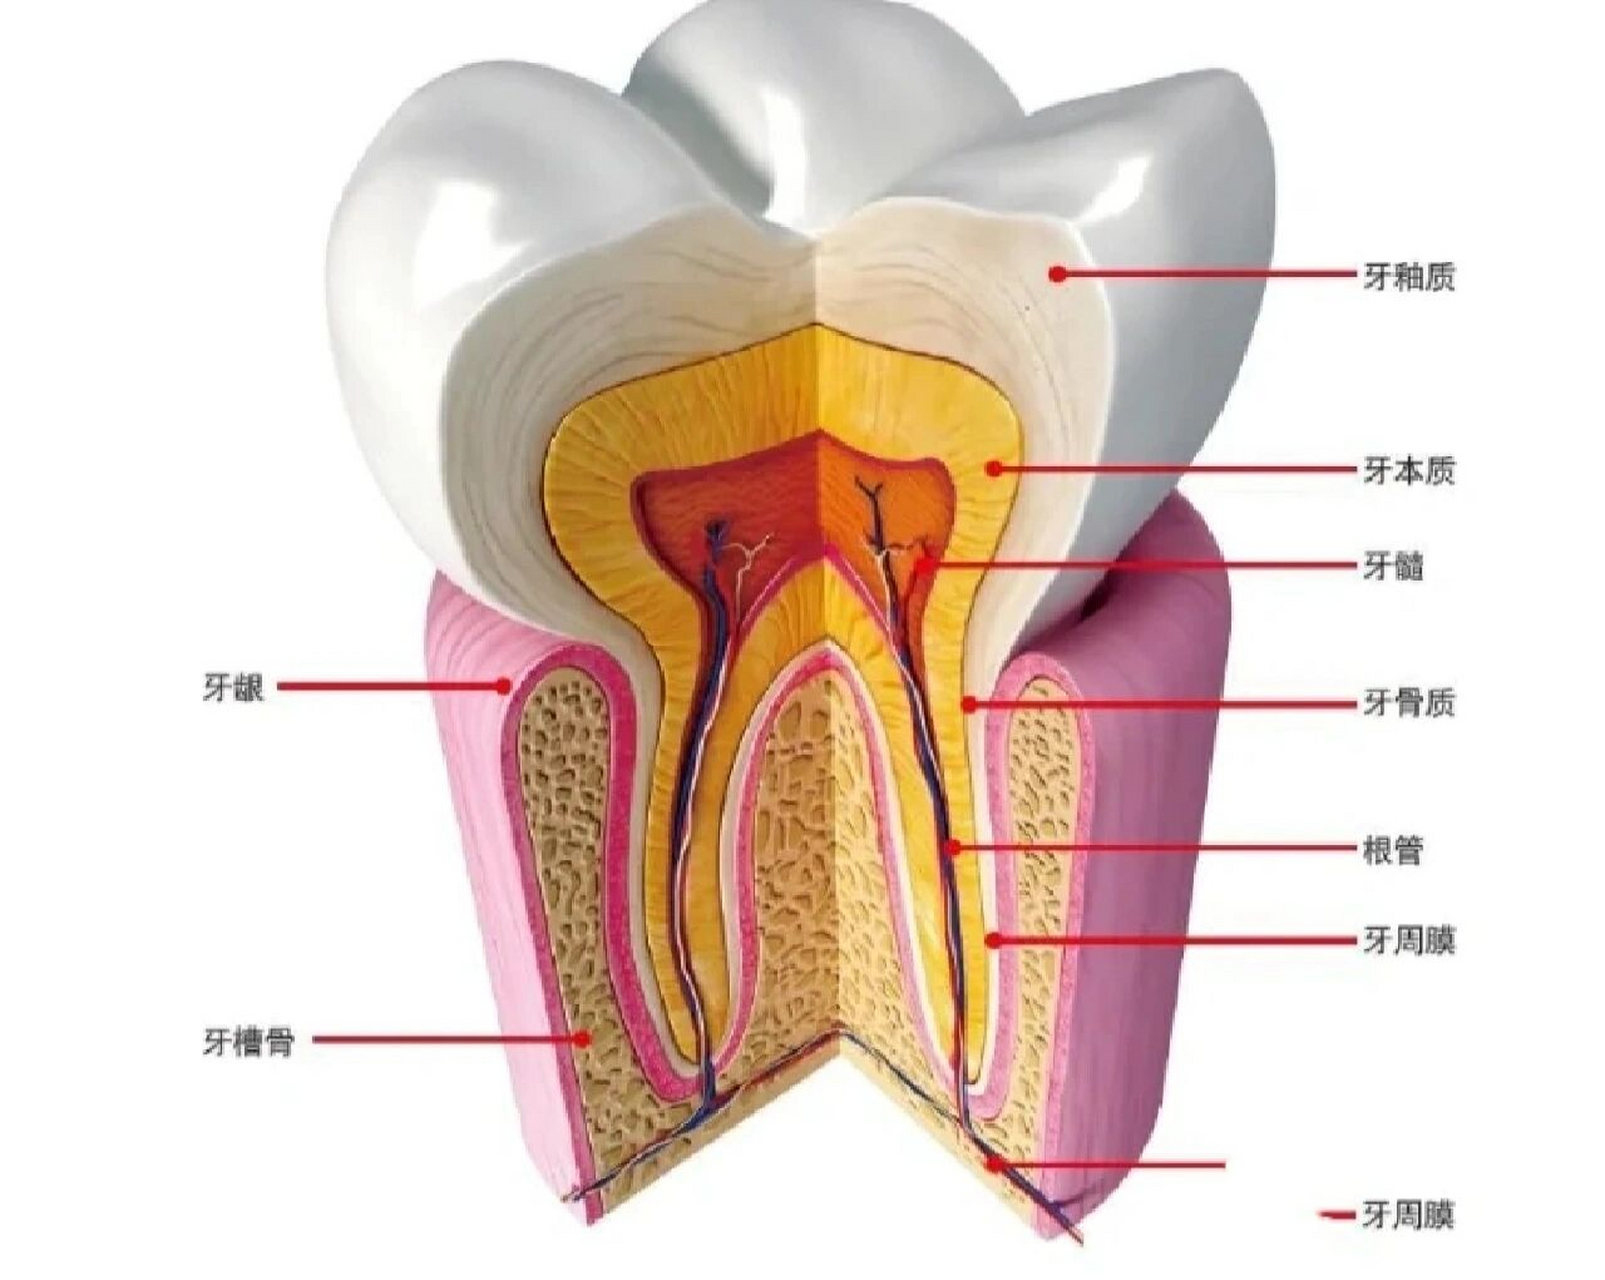 牙齿的部位名称示意图图片